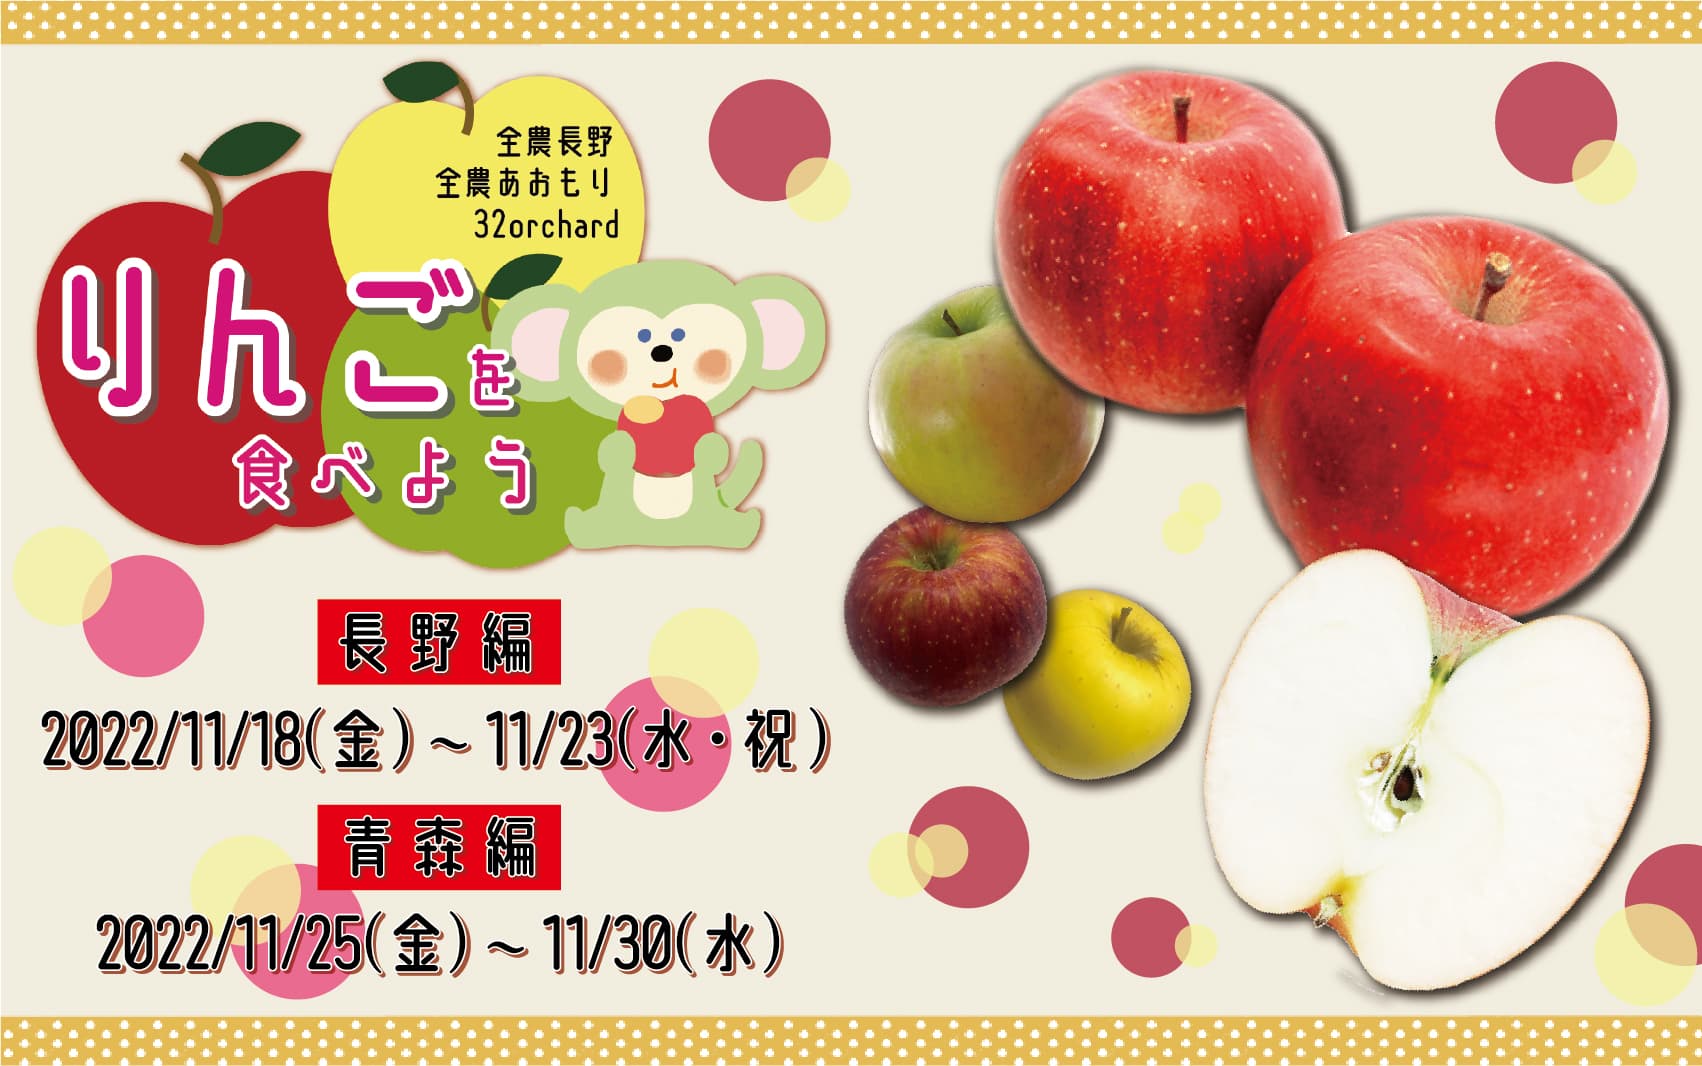 11/18〜30開催:りんごを食べようキャンペーン